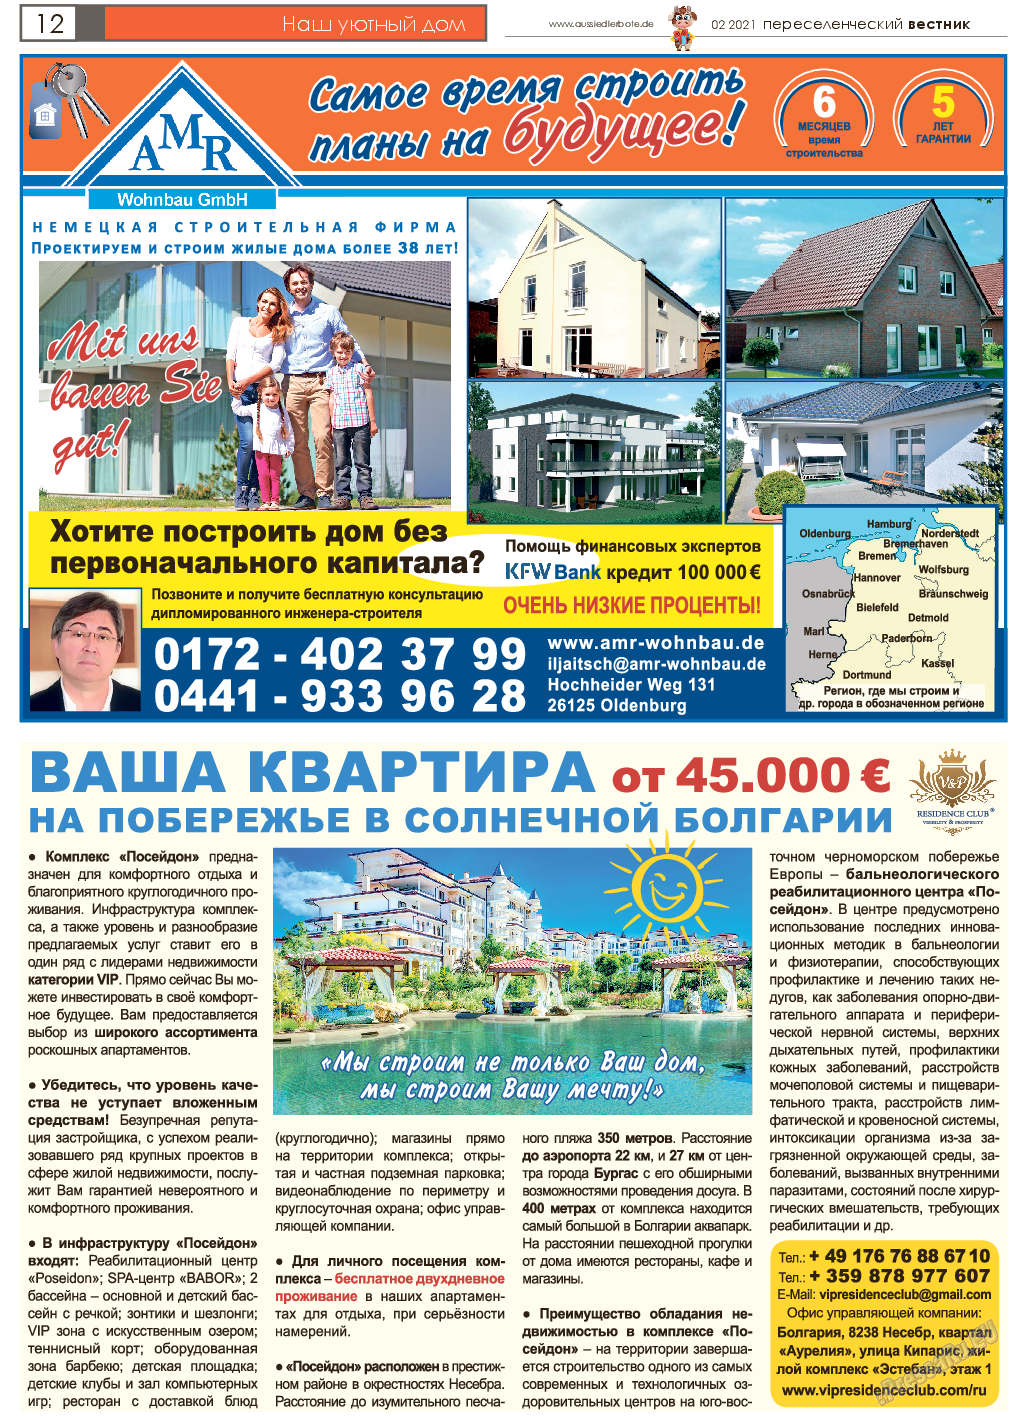 Переселенческий вестник, газета. 2021 №2 стр.12